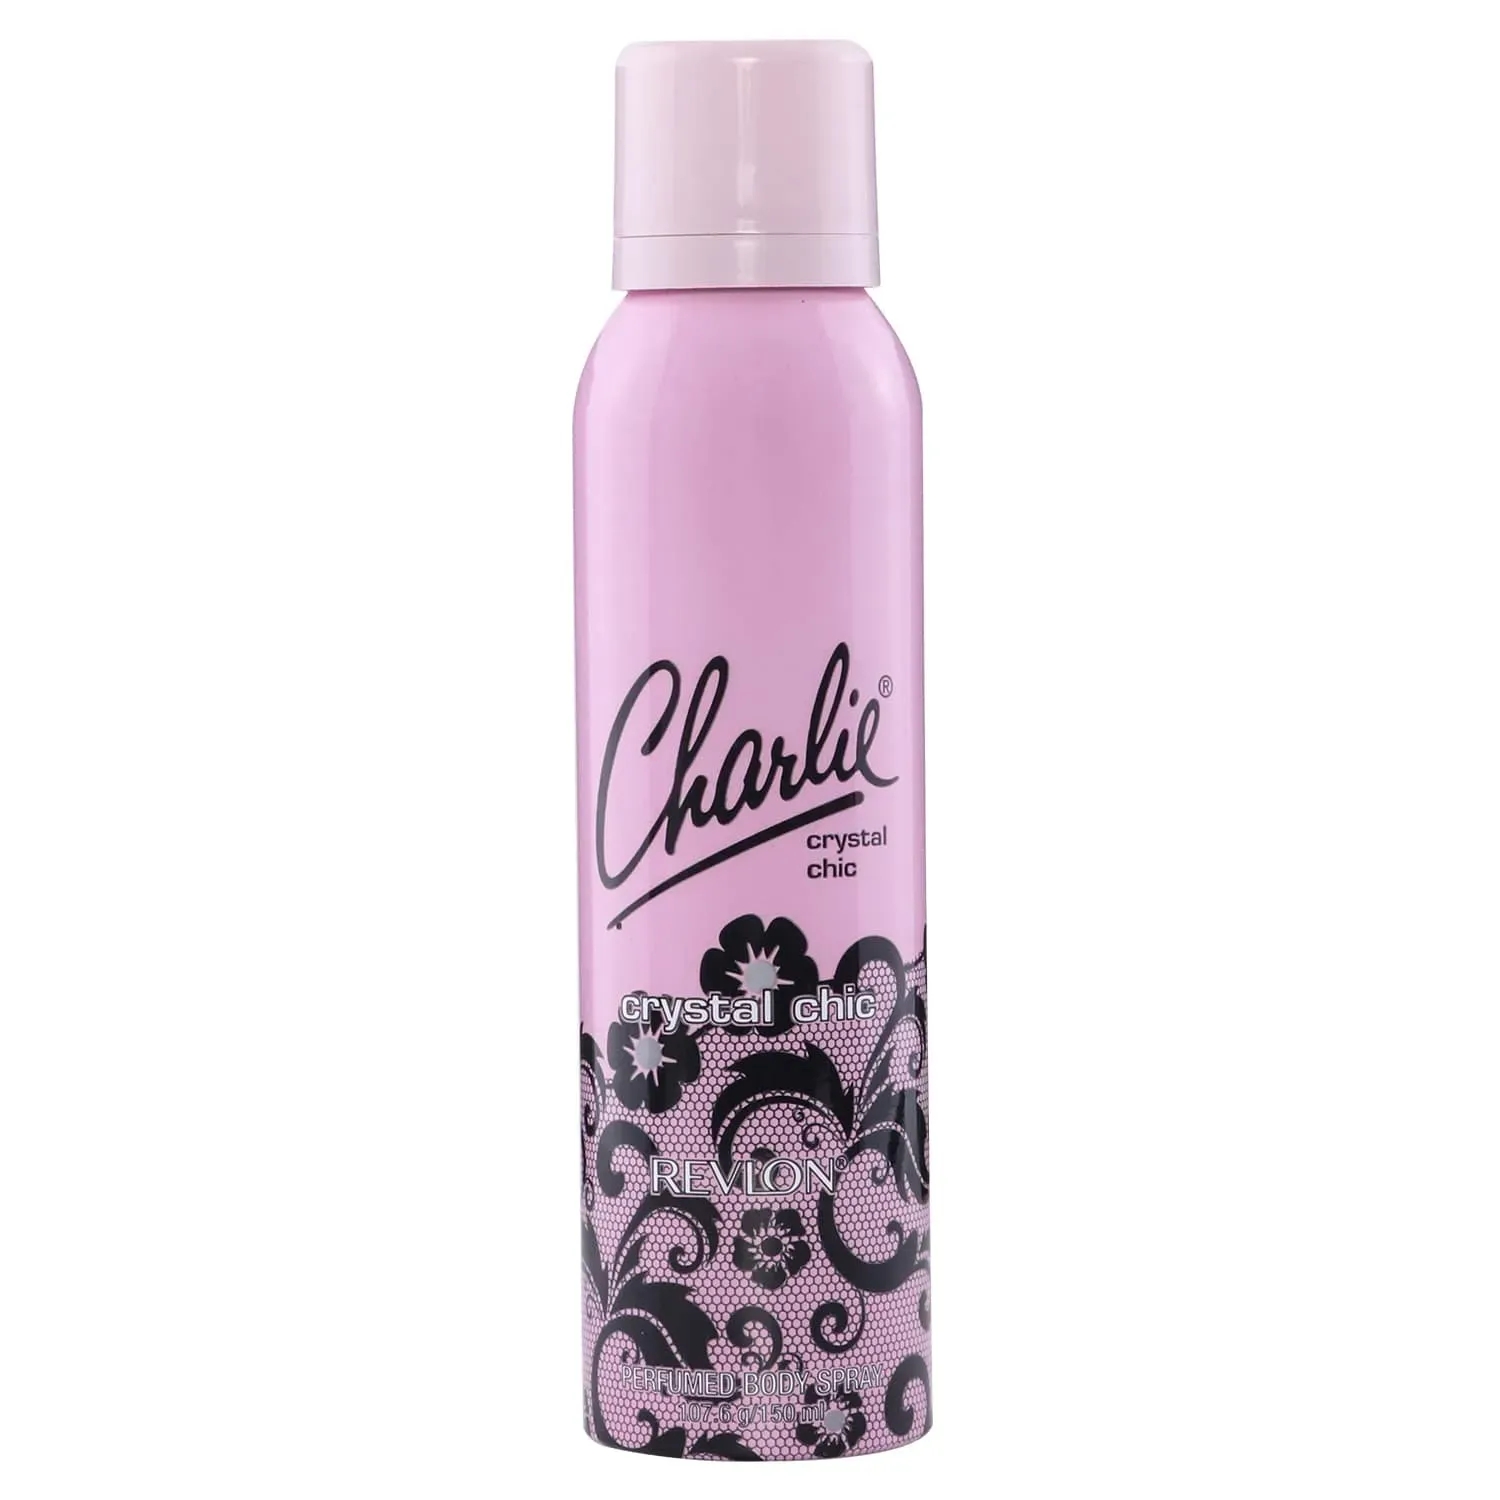 Revlon | Revlon Charlie Crystal Chic Perfumed Body Spray (150ml)